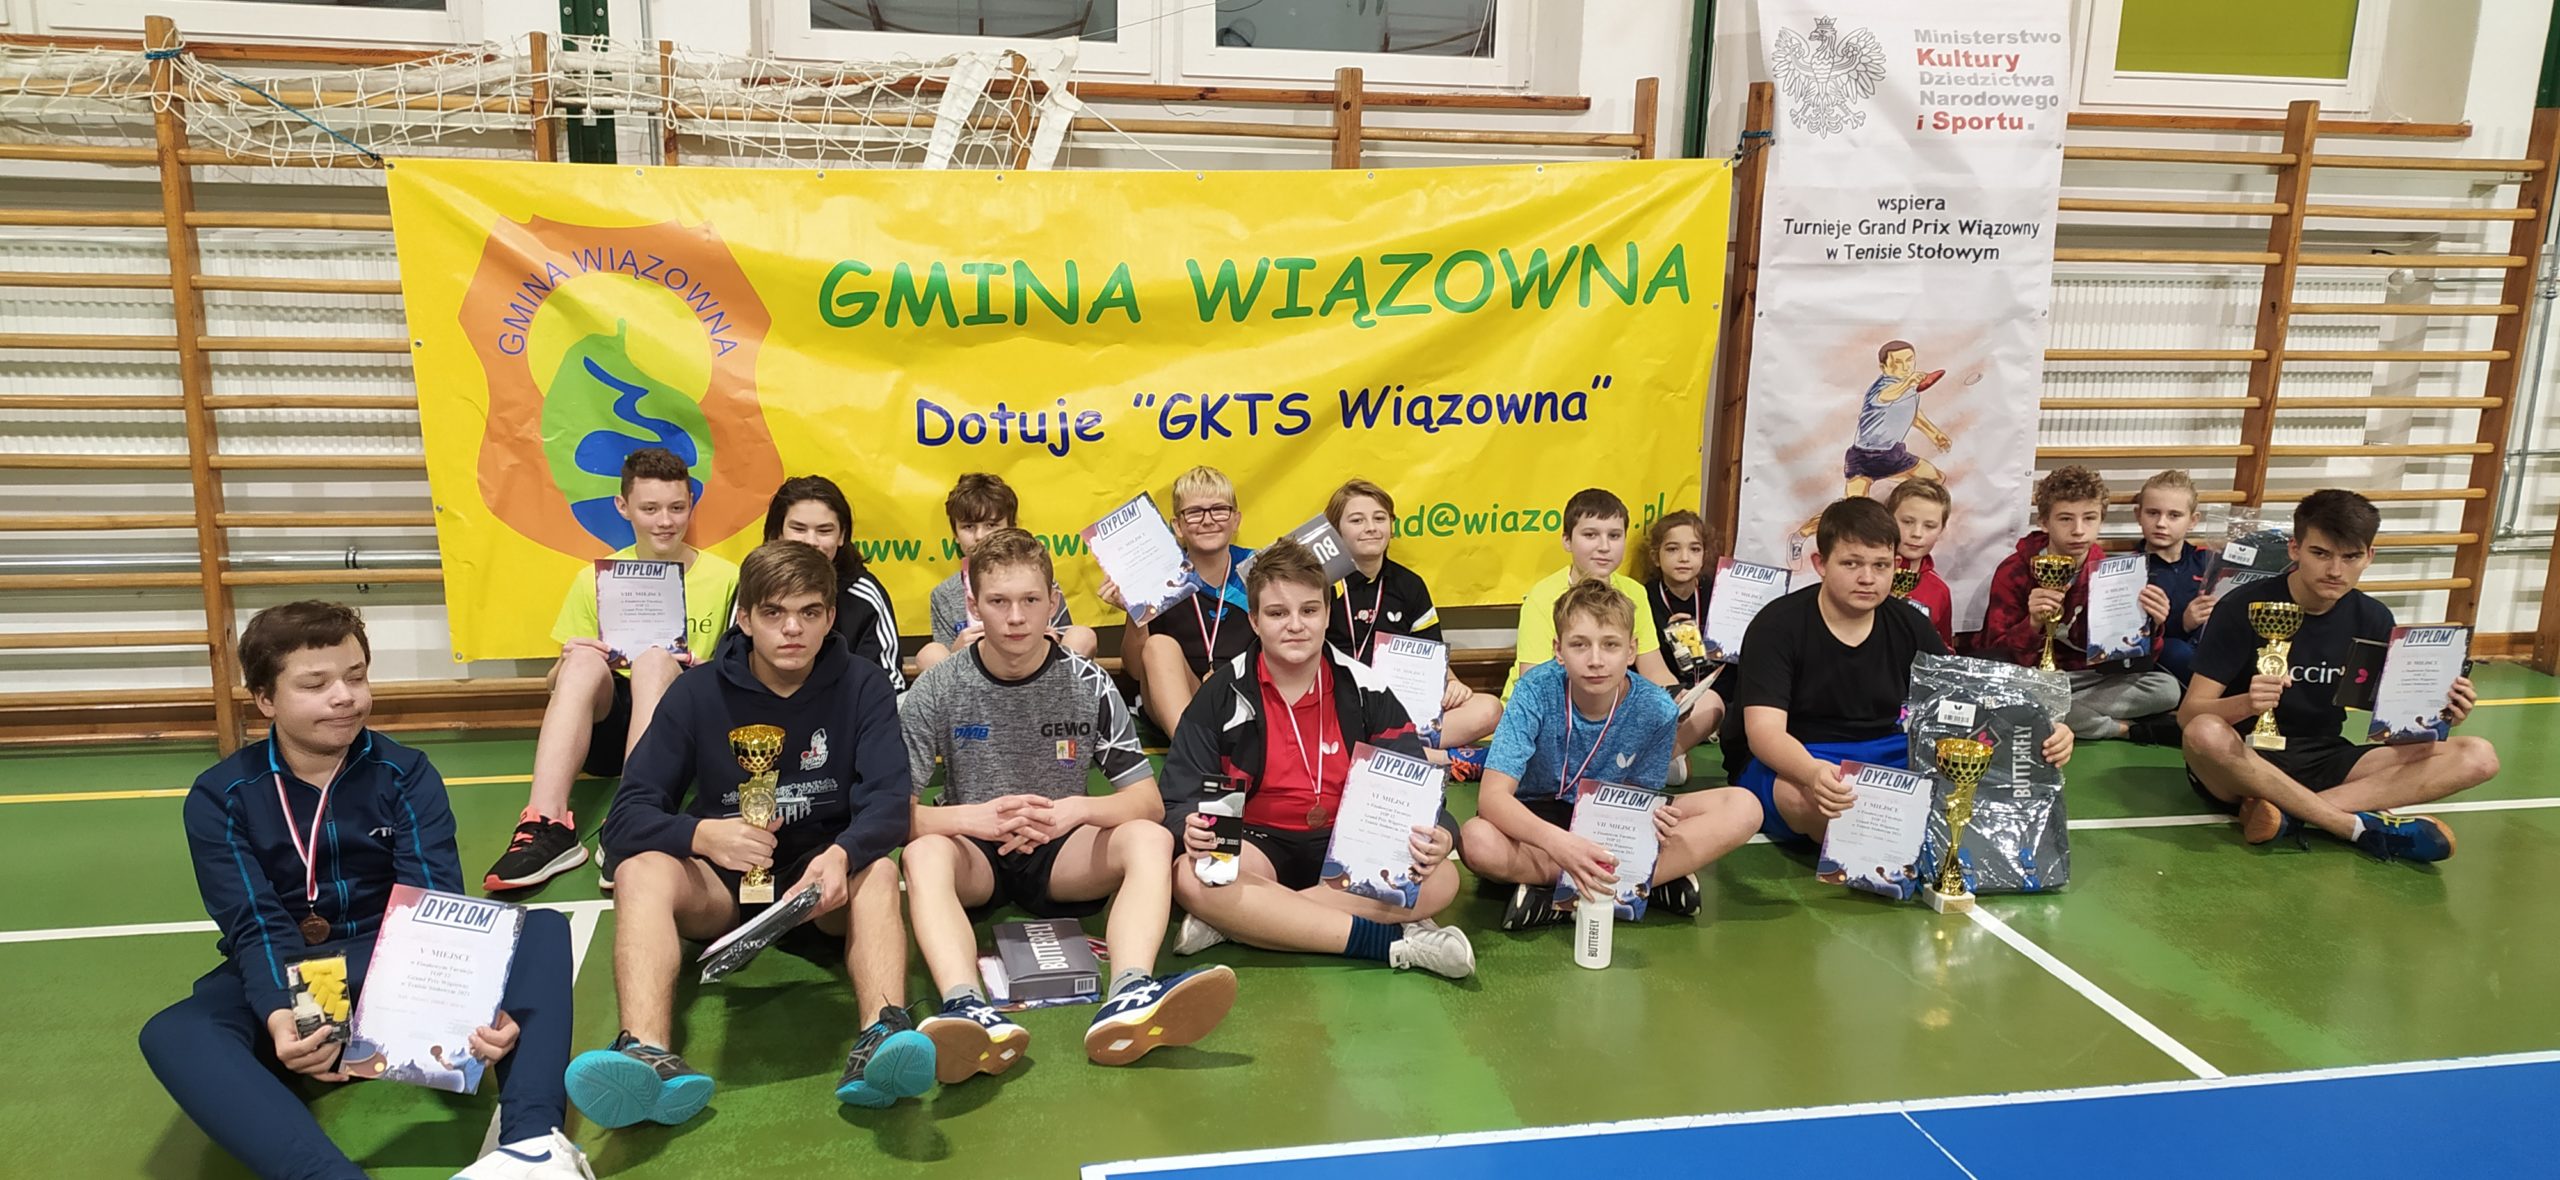 Turniej finałowy odbył się w Szkole Podstawowej w Wiązownie